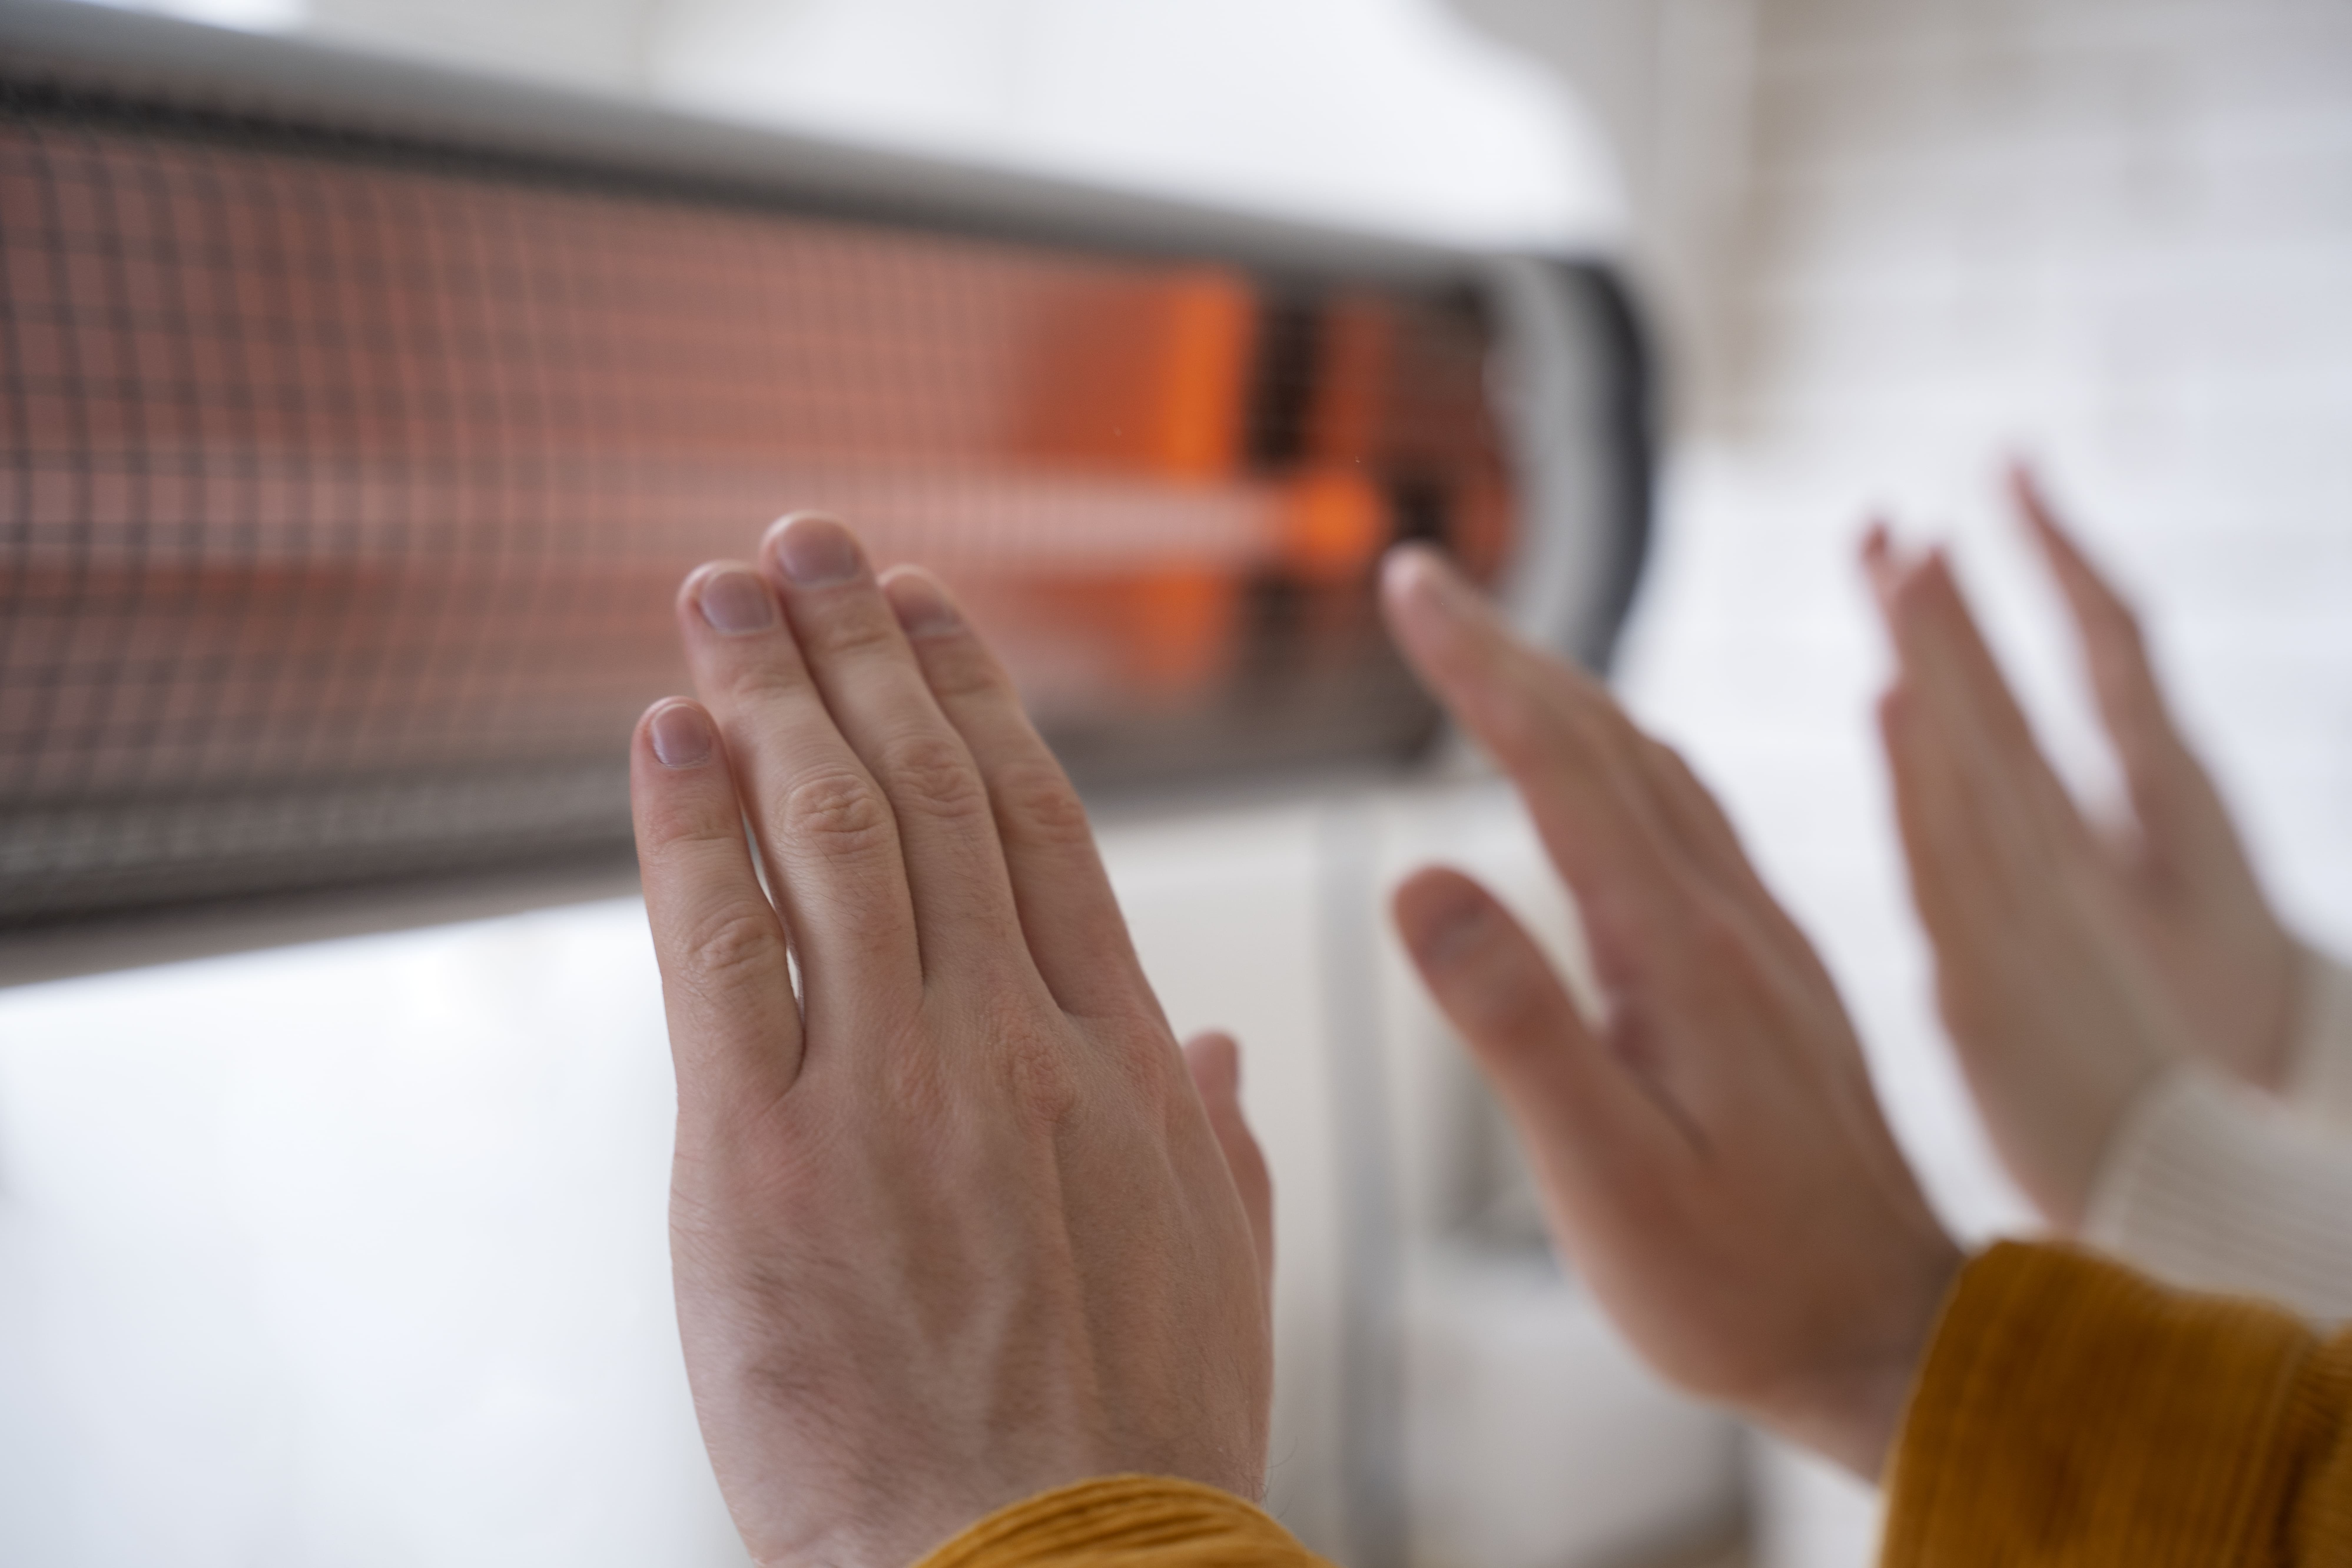 Cómo usar gas LP para calentar casa cómo usar gas lp para calentar casa - cerrar gente calentando manos cerca calentador 1 - Cómo usar gas LP para calentar casa